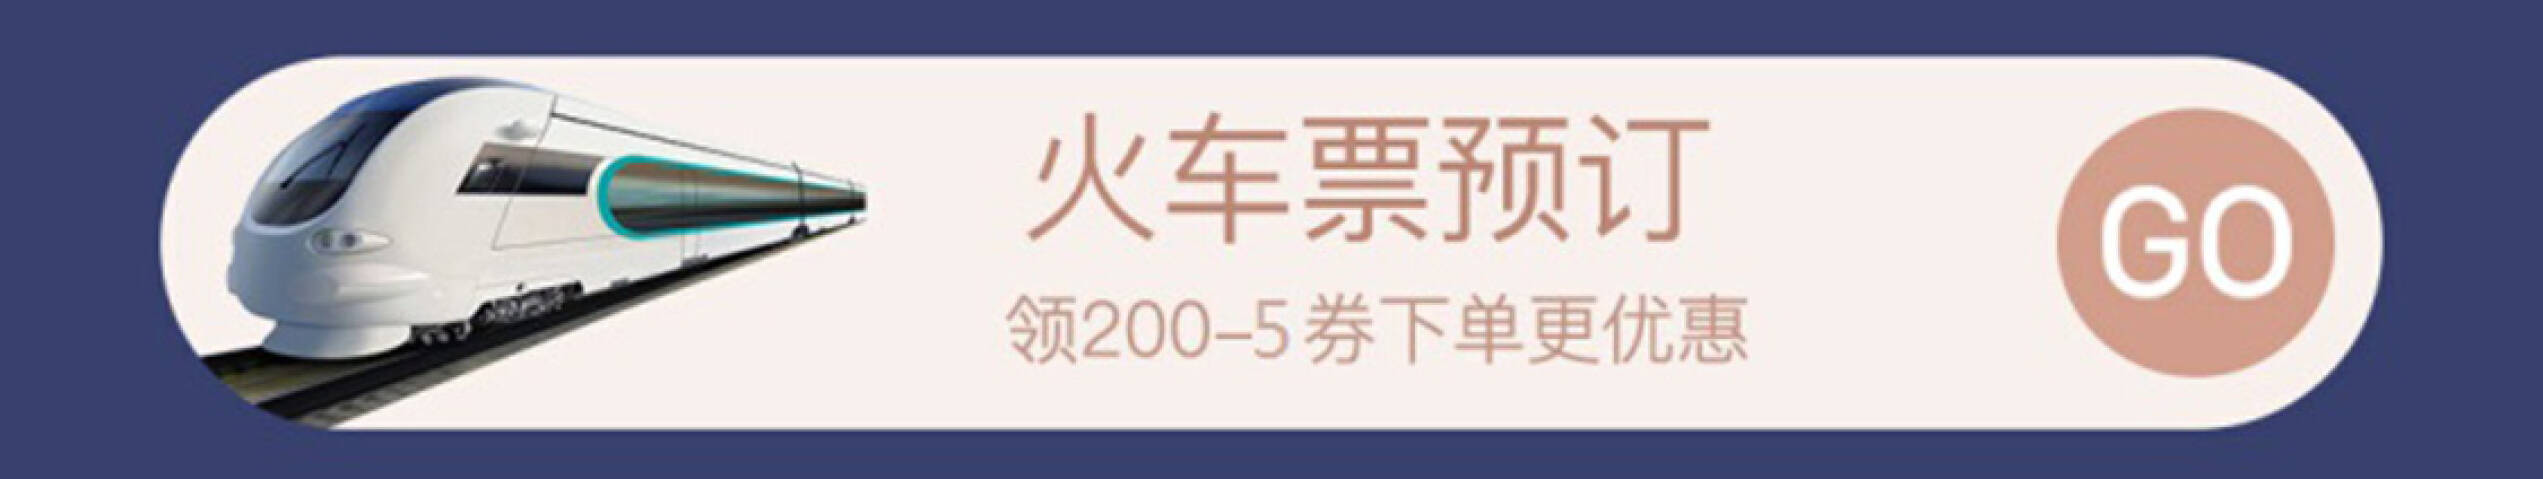 京东商城  火车票优惠券 满200减5元